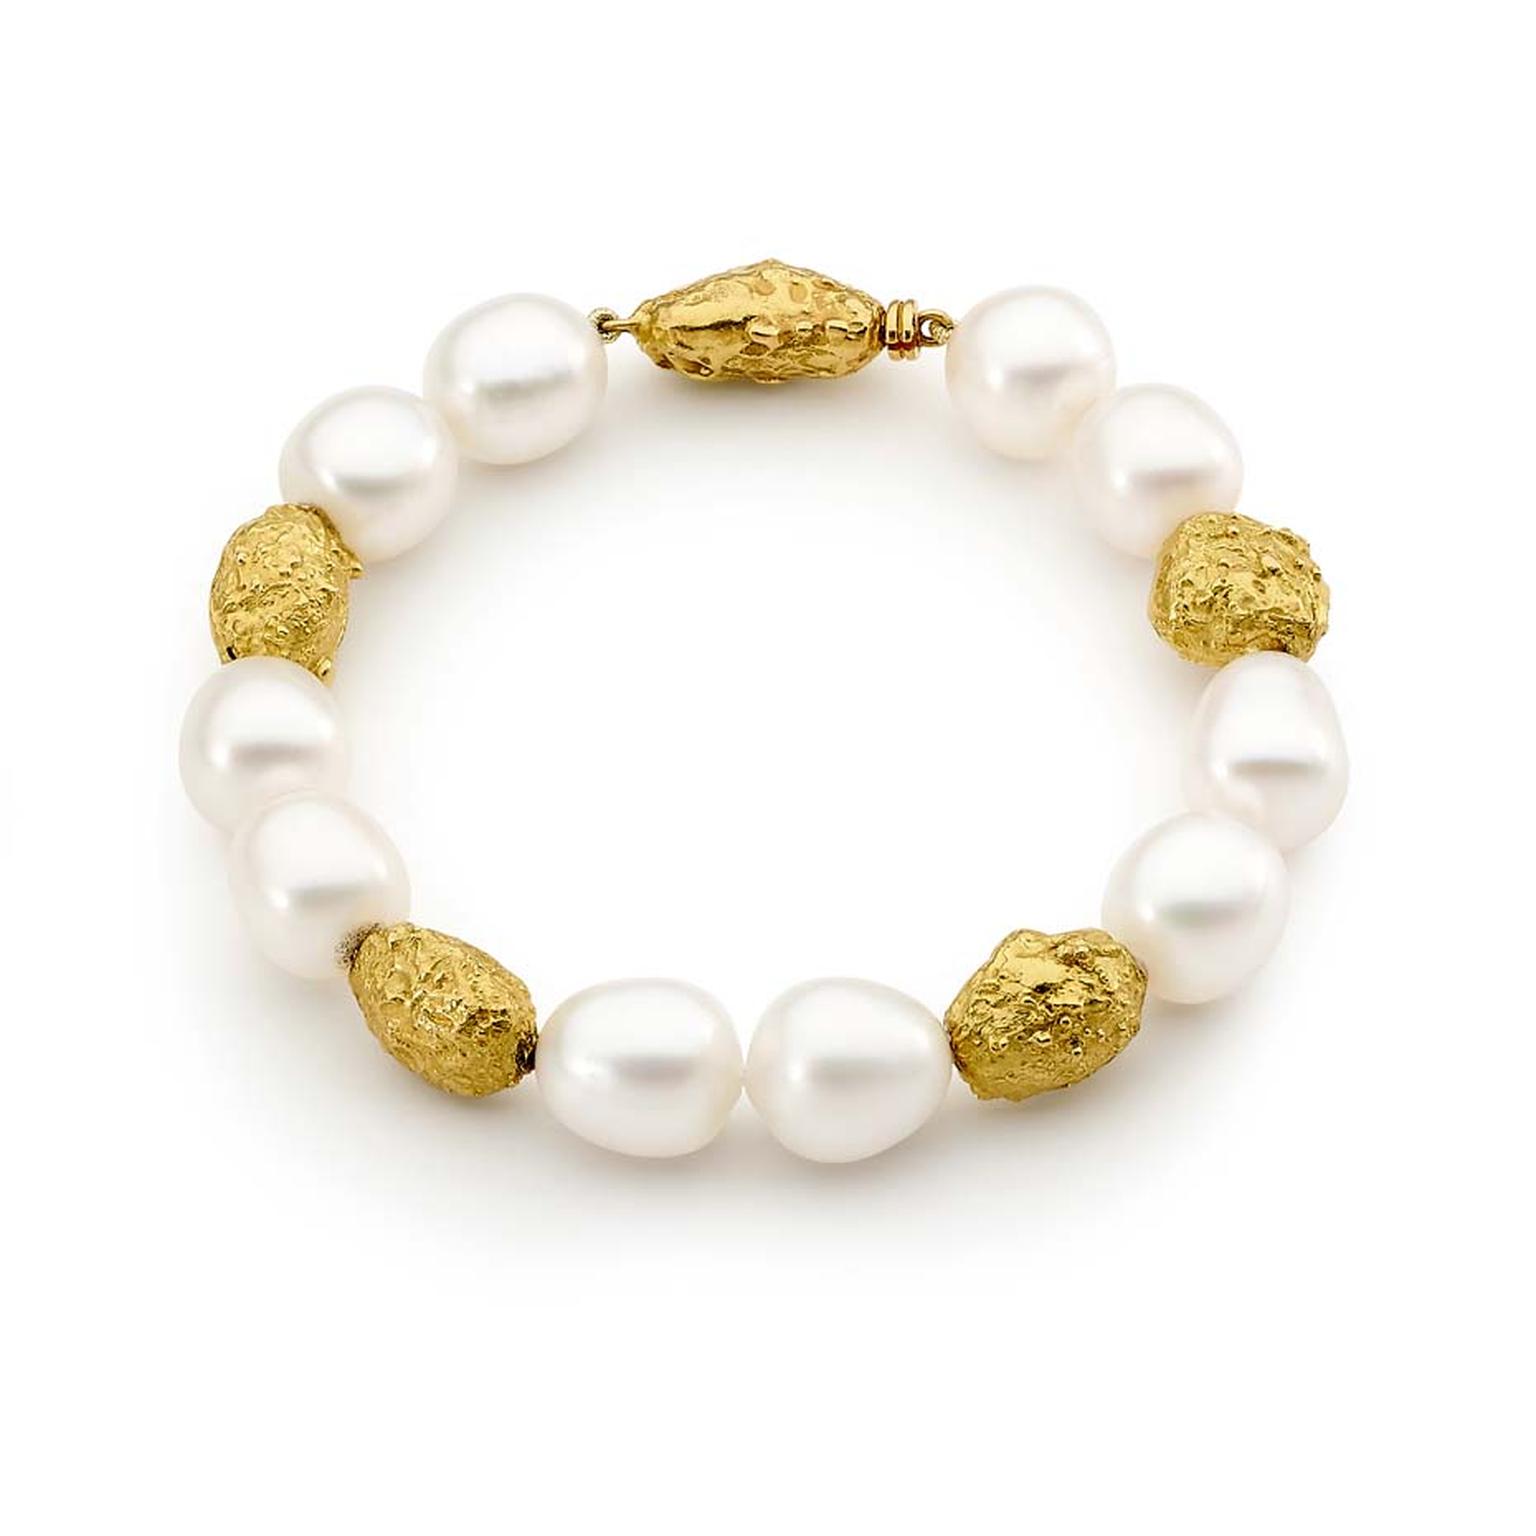 Australian Pearls_Linneys_yellow gold Australian South Sea pearl bracelet 8,500.jpg